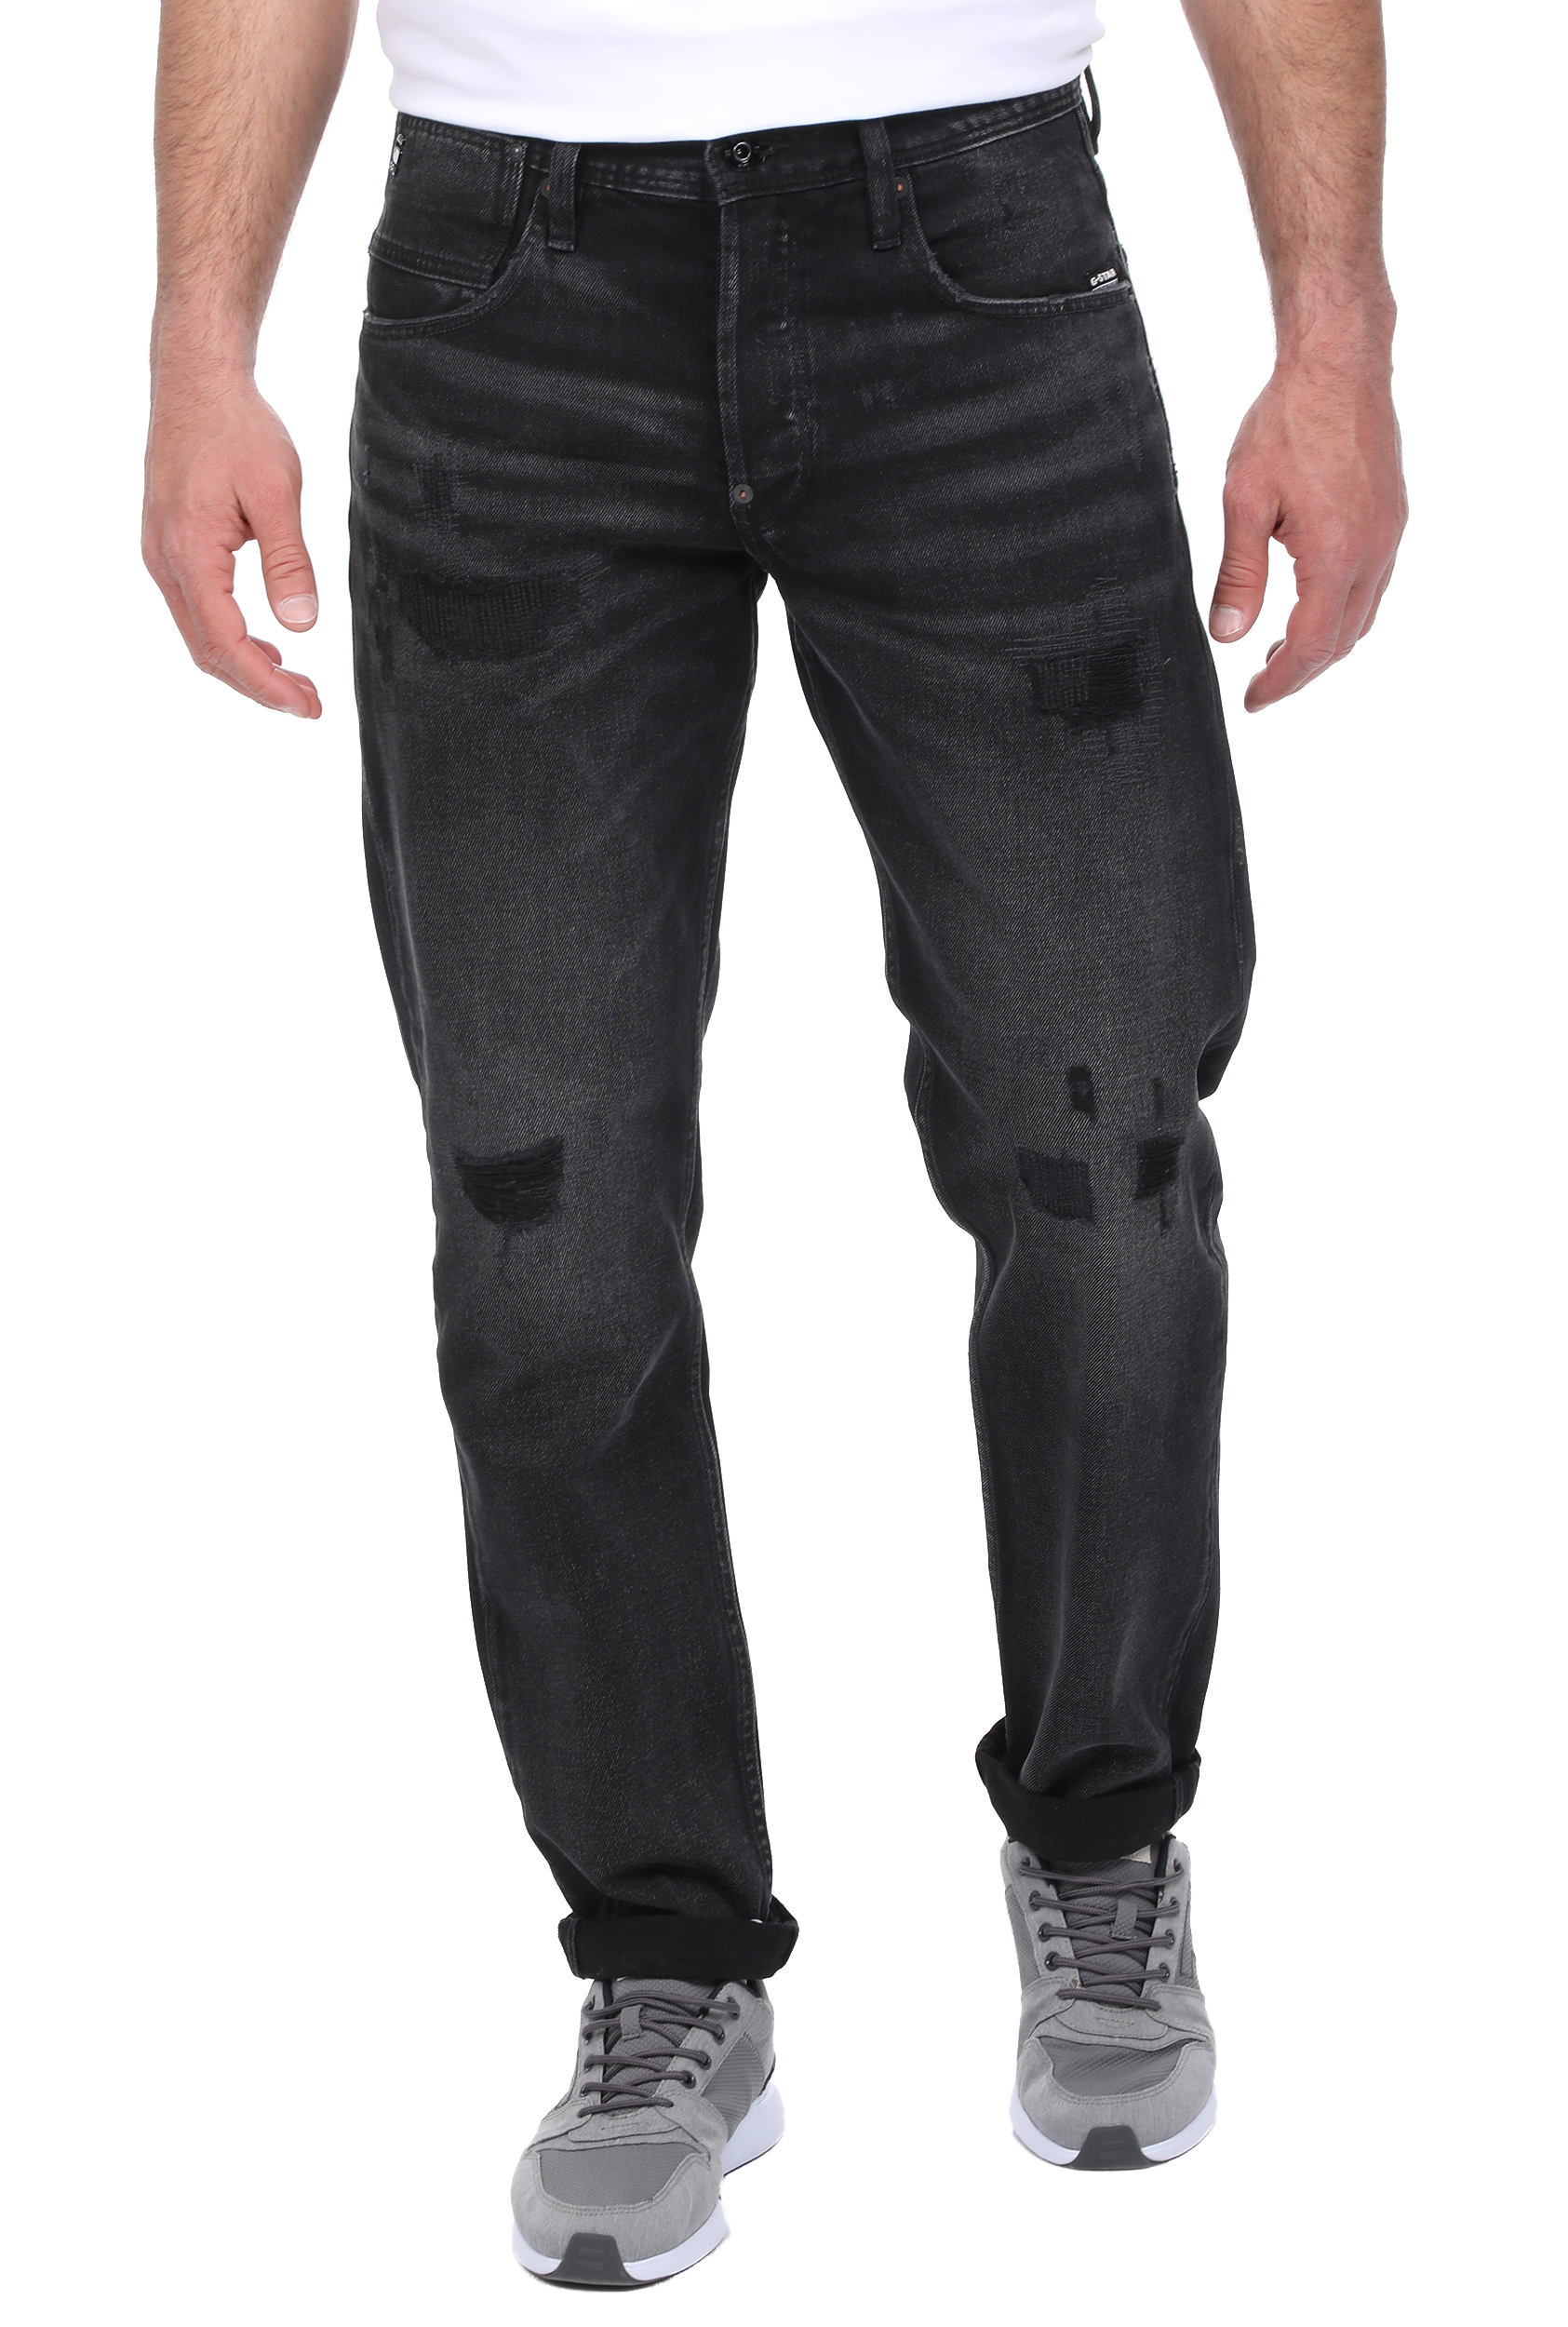 Ανδρικά/Ρούχα/Τζίν/Loose G-STAR RAW - Ανδρικό jean παντελόνι G-STAR RAW Alum Relaxed Tapered μαύρο